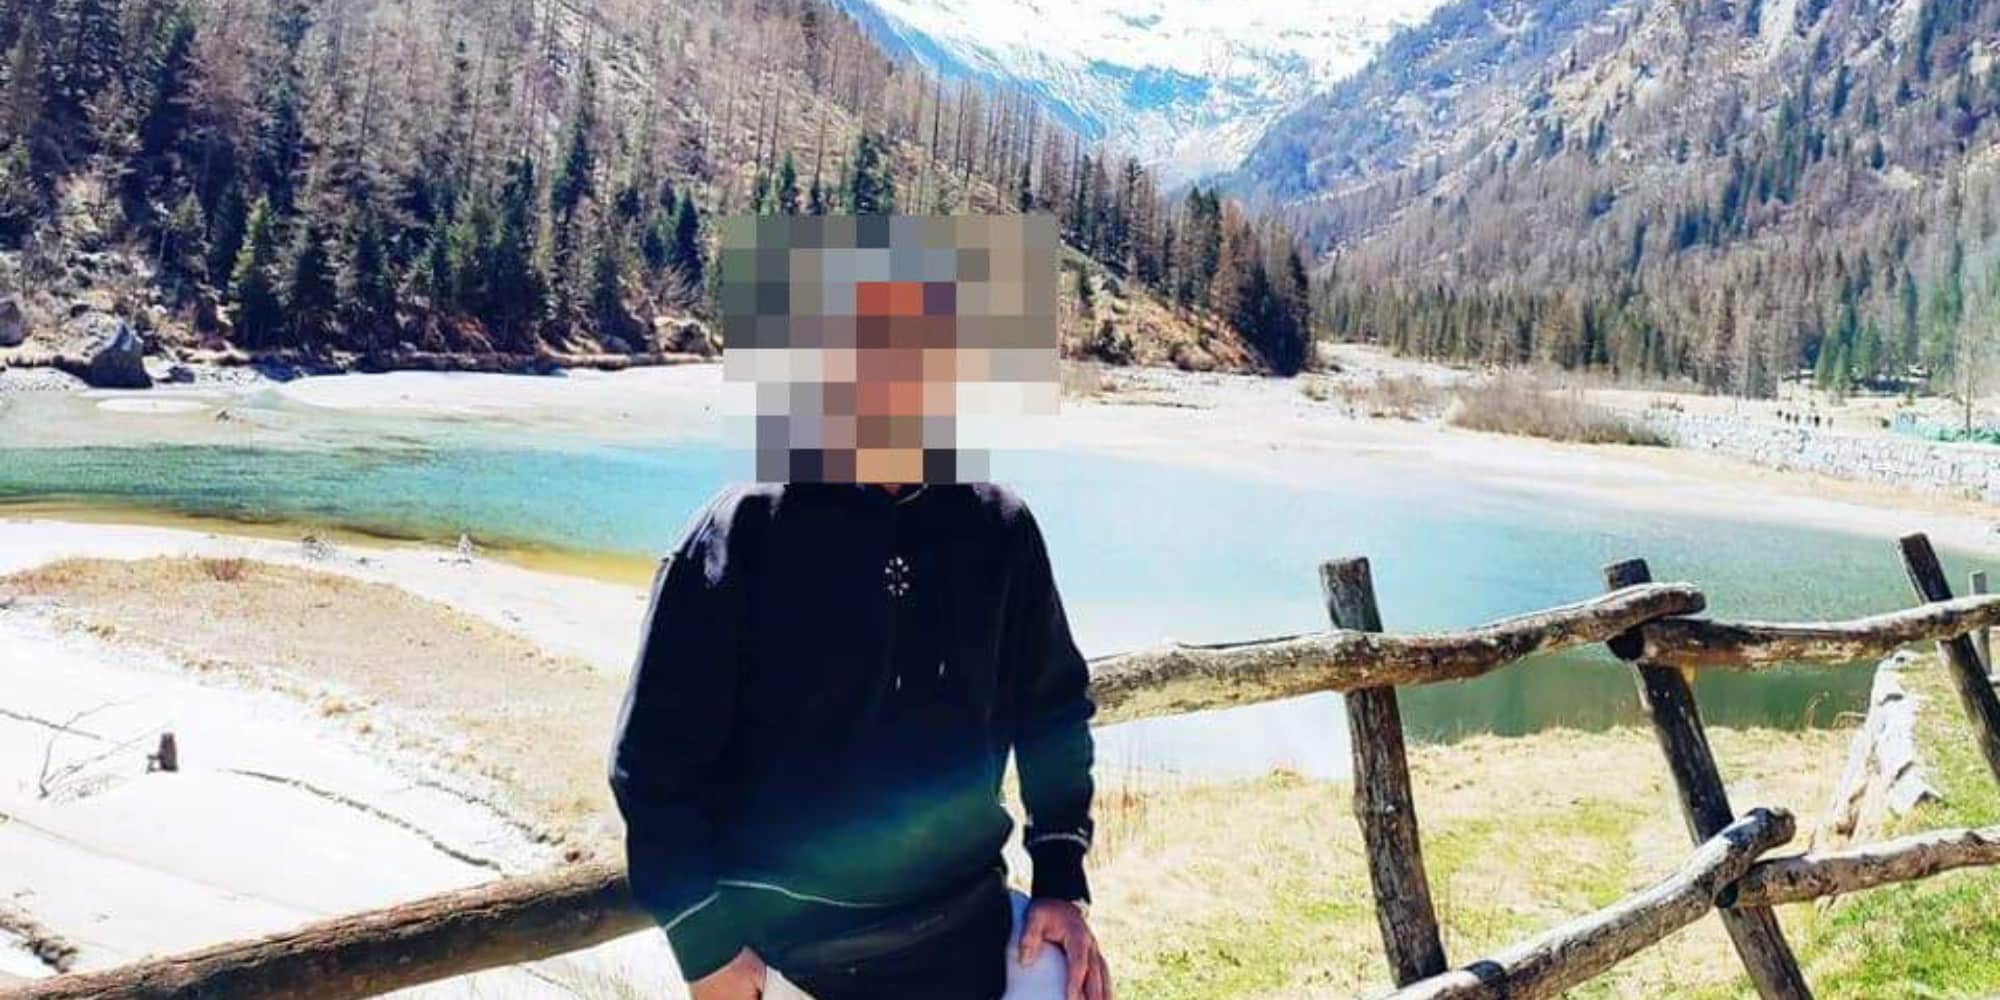 Έγκλημα στην Μύκονο: Αυτός είναι ο Αλβανός που δολοφονήθηκε έξω από κλαμπ - Γνωστός επιχειρηματίας ο άνδρας που τον σκότωσε (εικόνες)